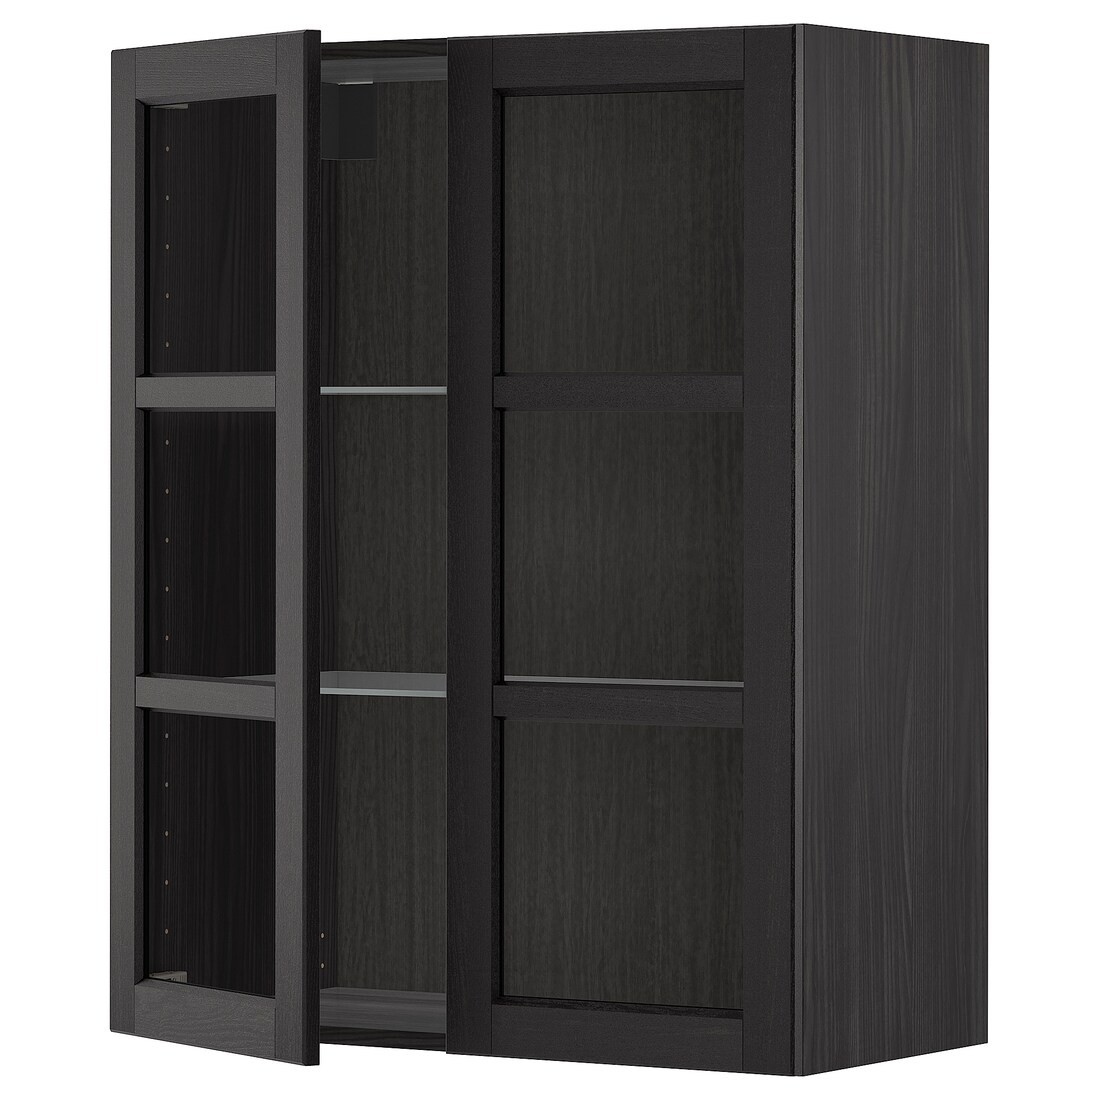 IKEA METOD МЕТОД Навесной шкаф, черный / Lerhyttan черная морилка, 80x100 см 19454699 194.546.99